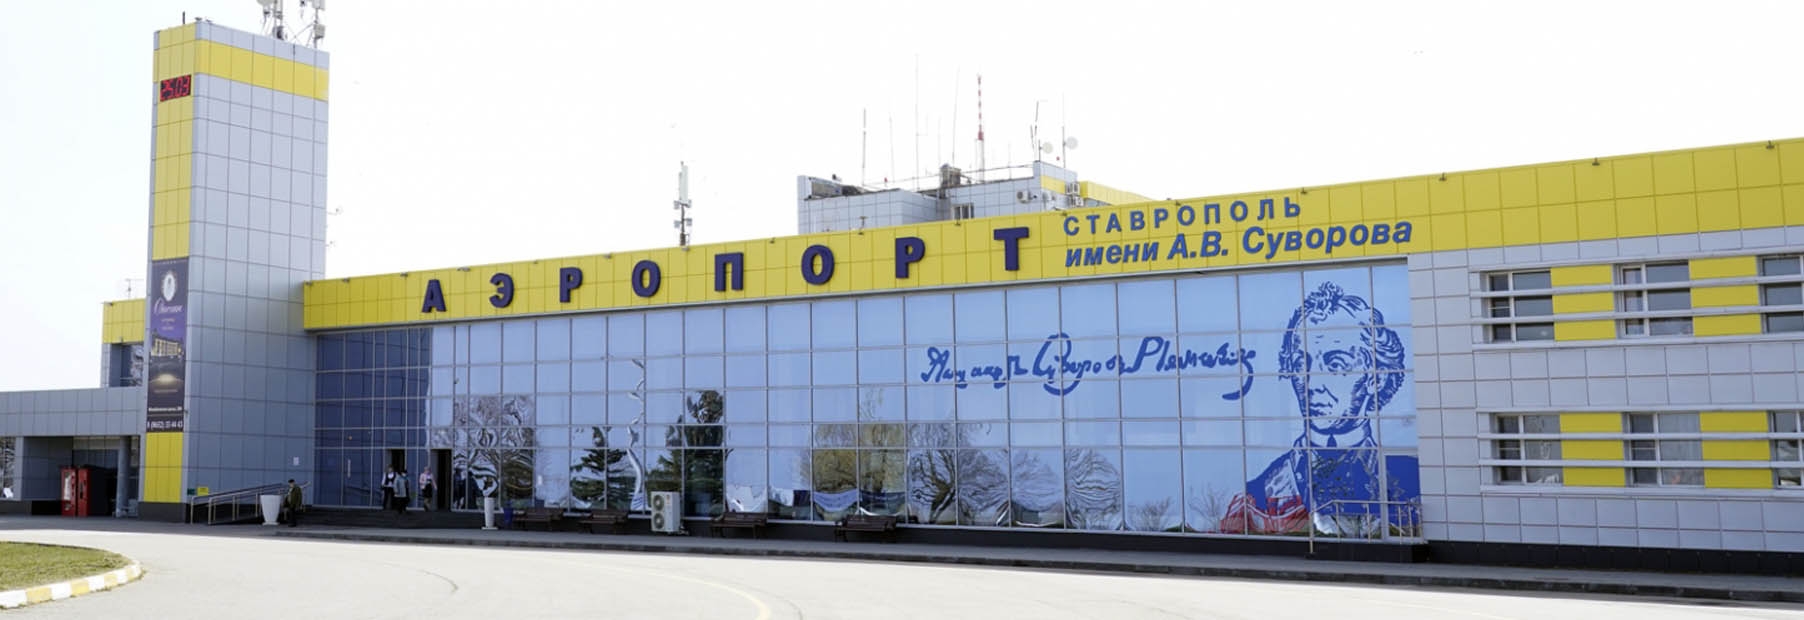 Частный самолет Ставрополь